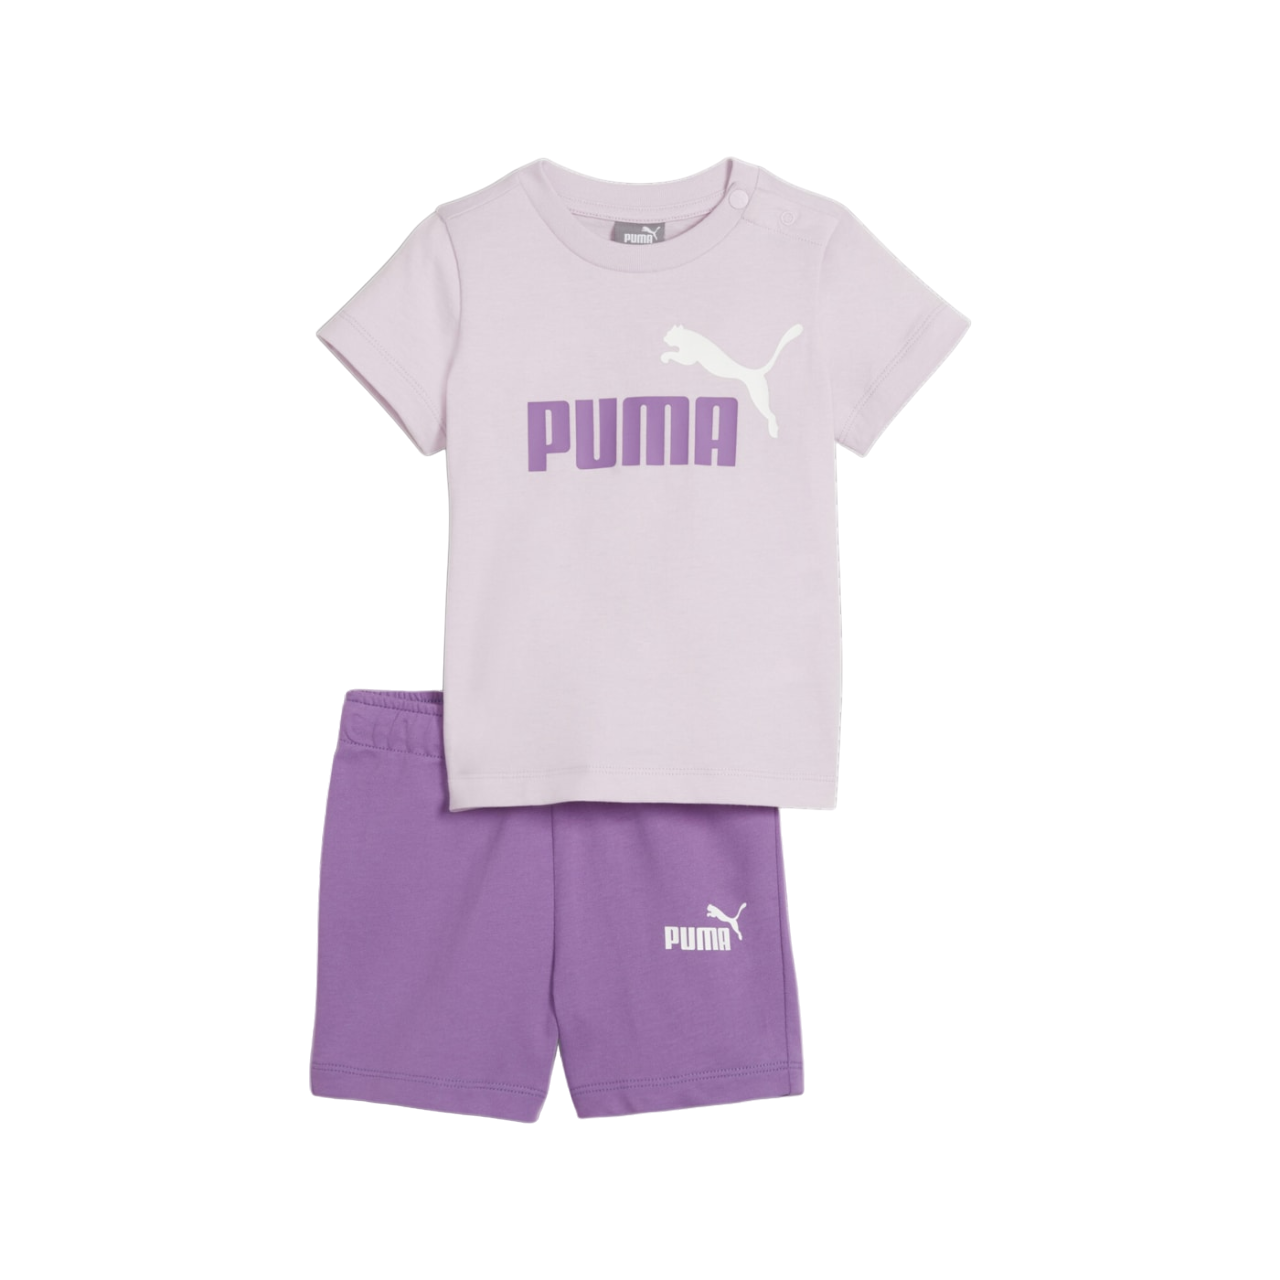 Puma completino da infant Minicats maglietta e pantaloncino 845839-59 glicine-viola